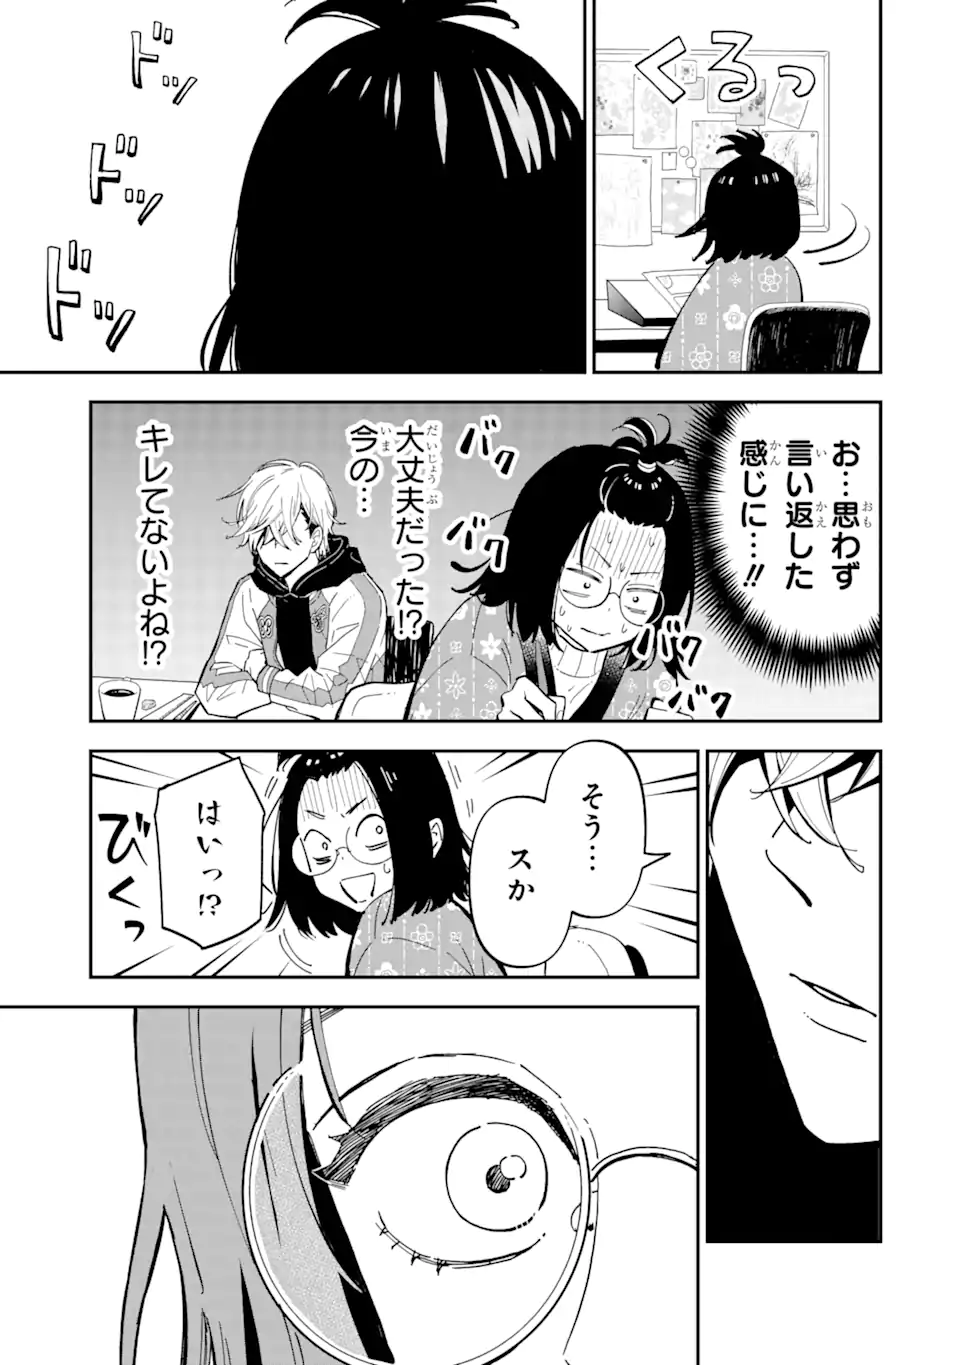 Yankee Assistant no Ashizawa-kun ni Koi wo shita - Chapter 1.2 - Page 6